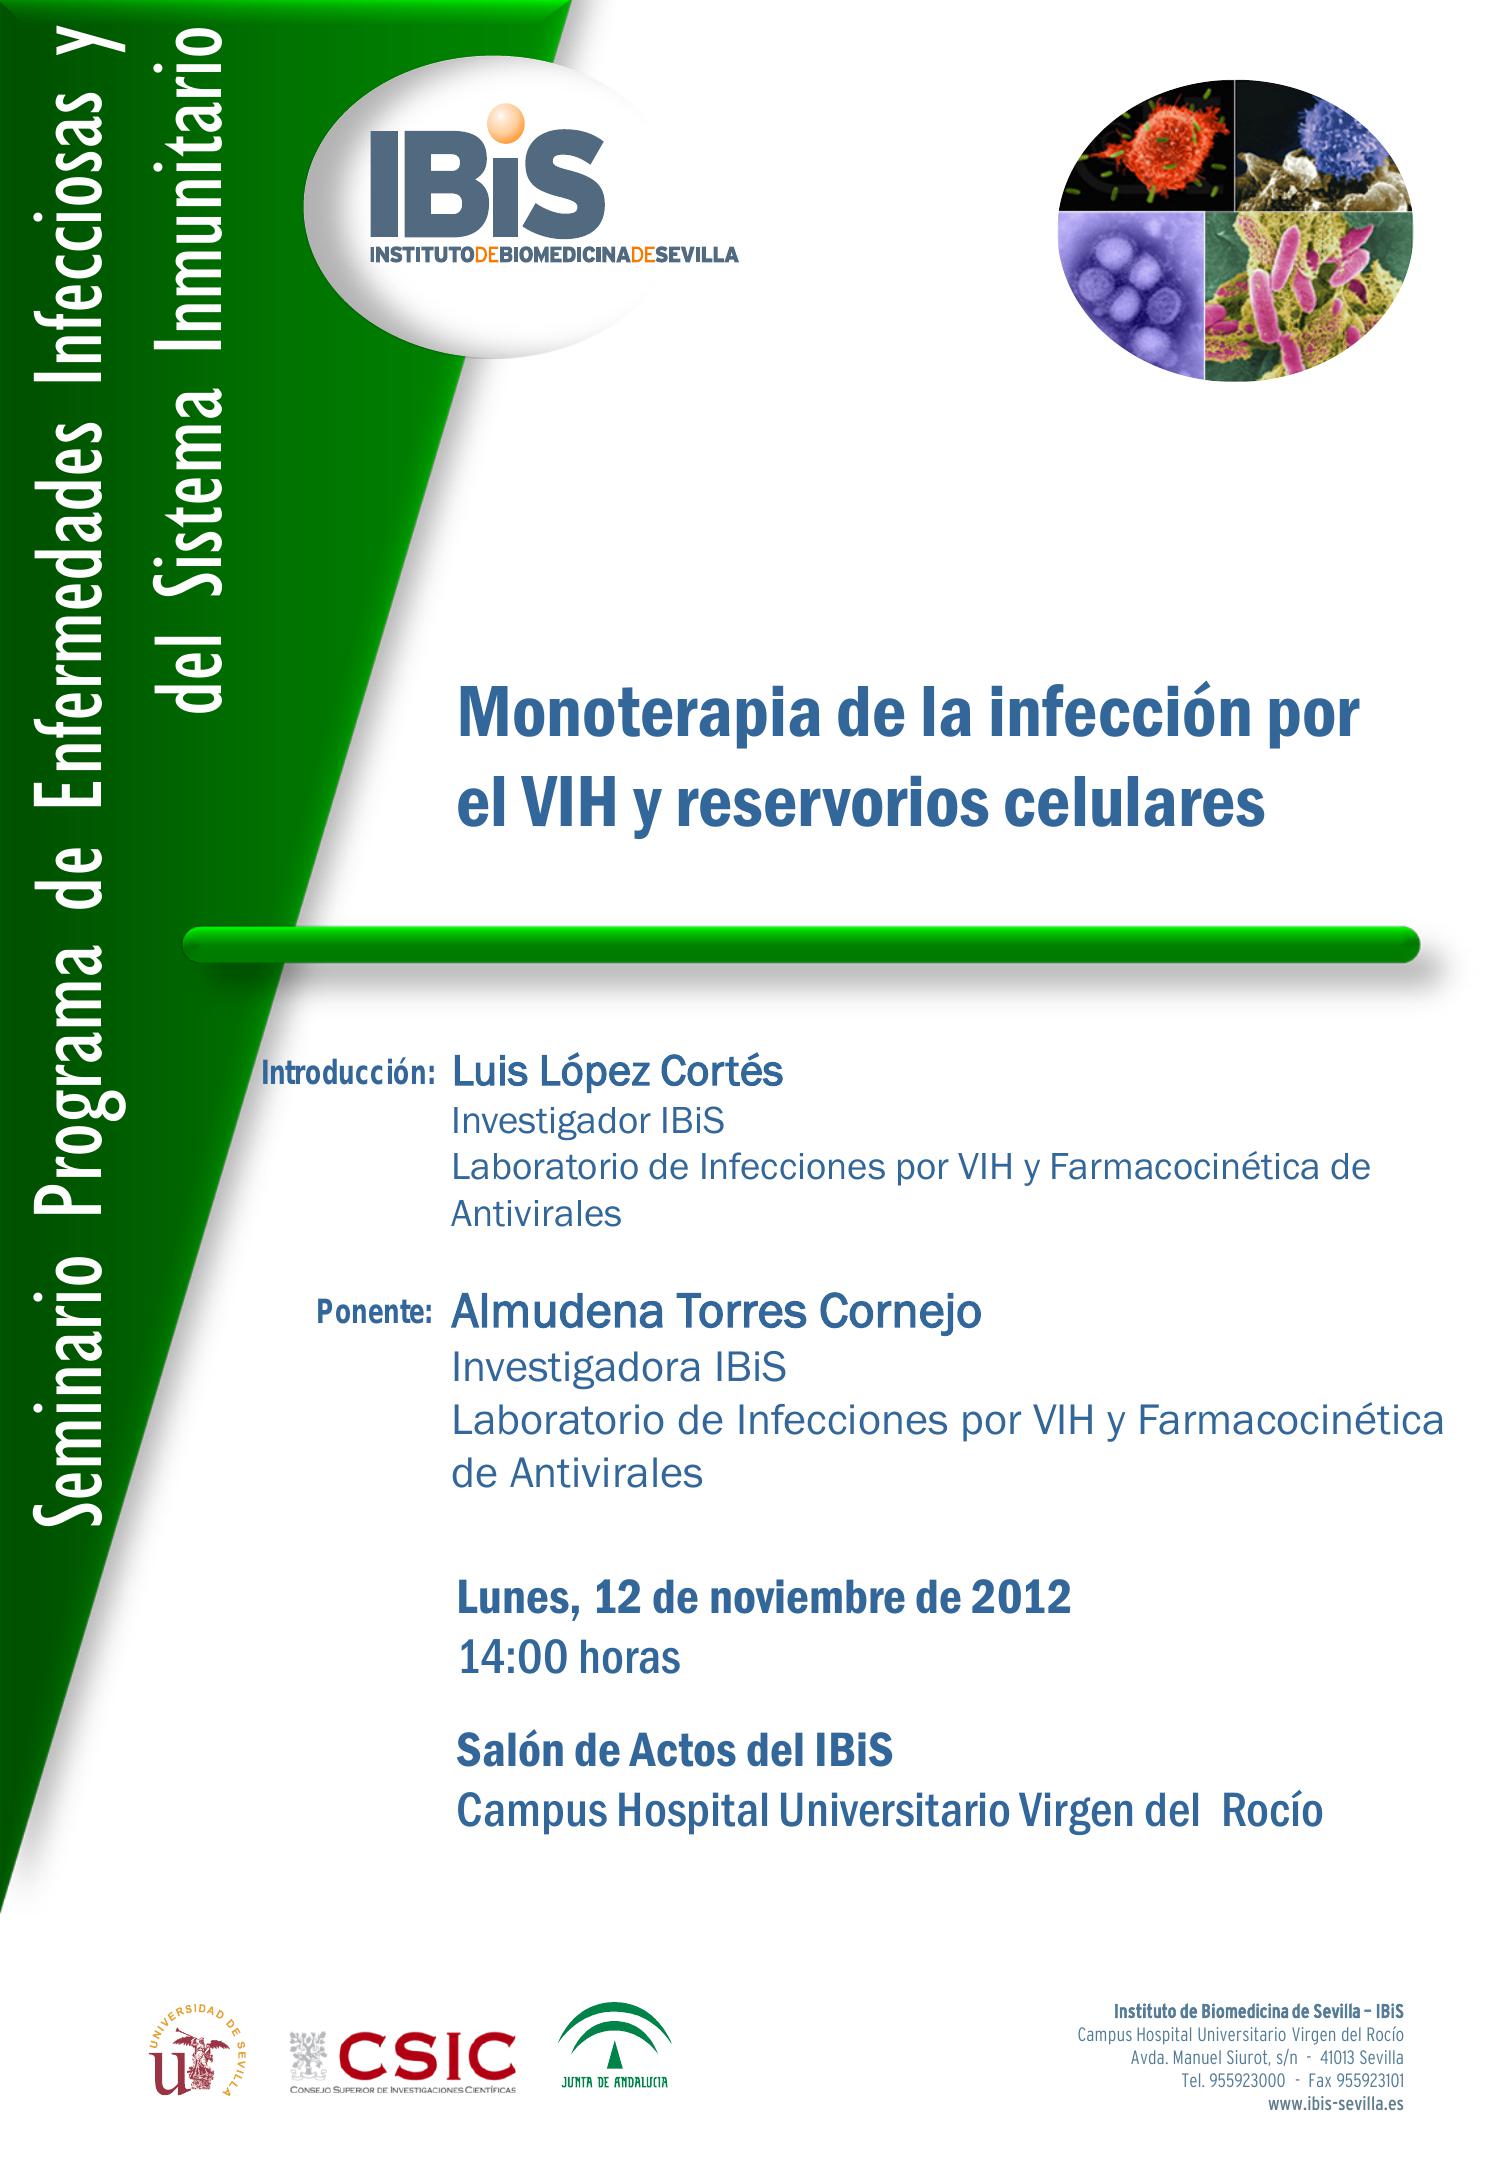 Poster: Monoterapia de la infección por el VIH y reservorios celulares.